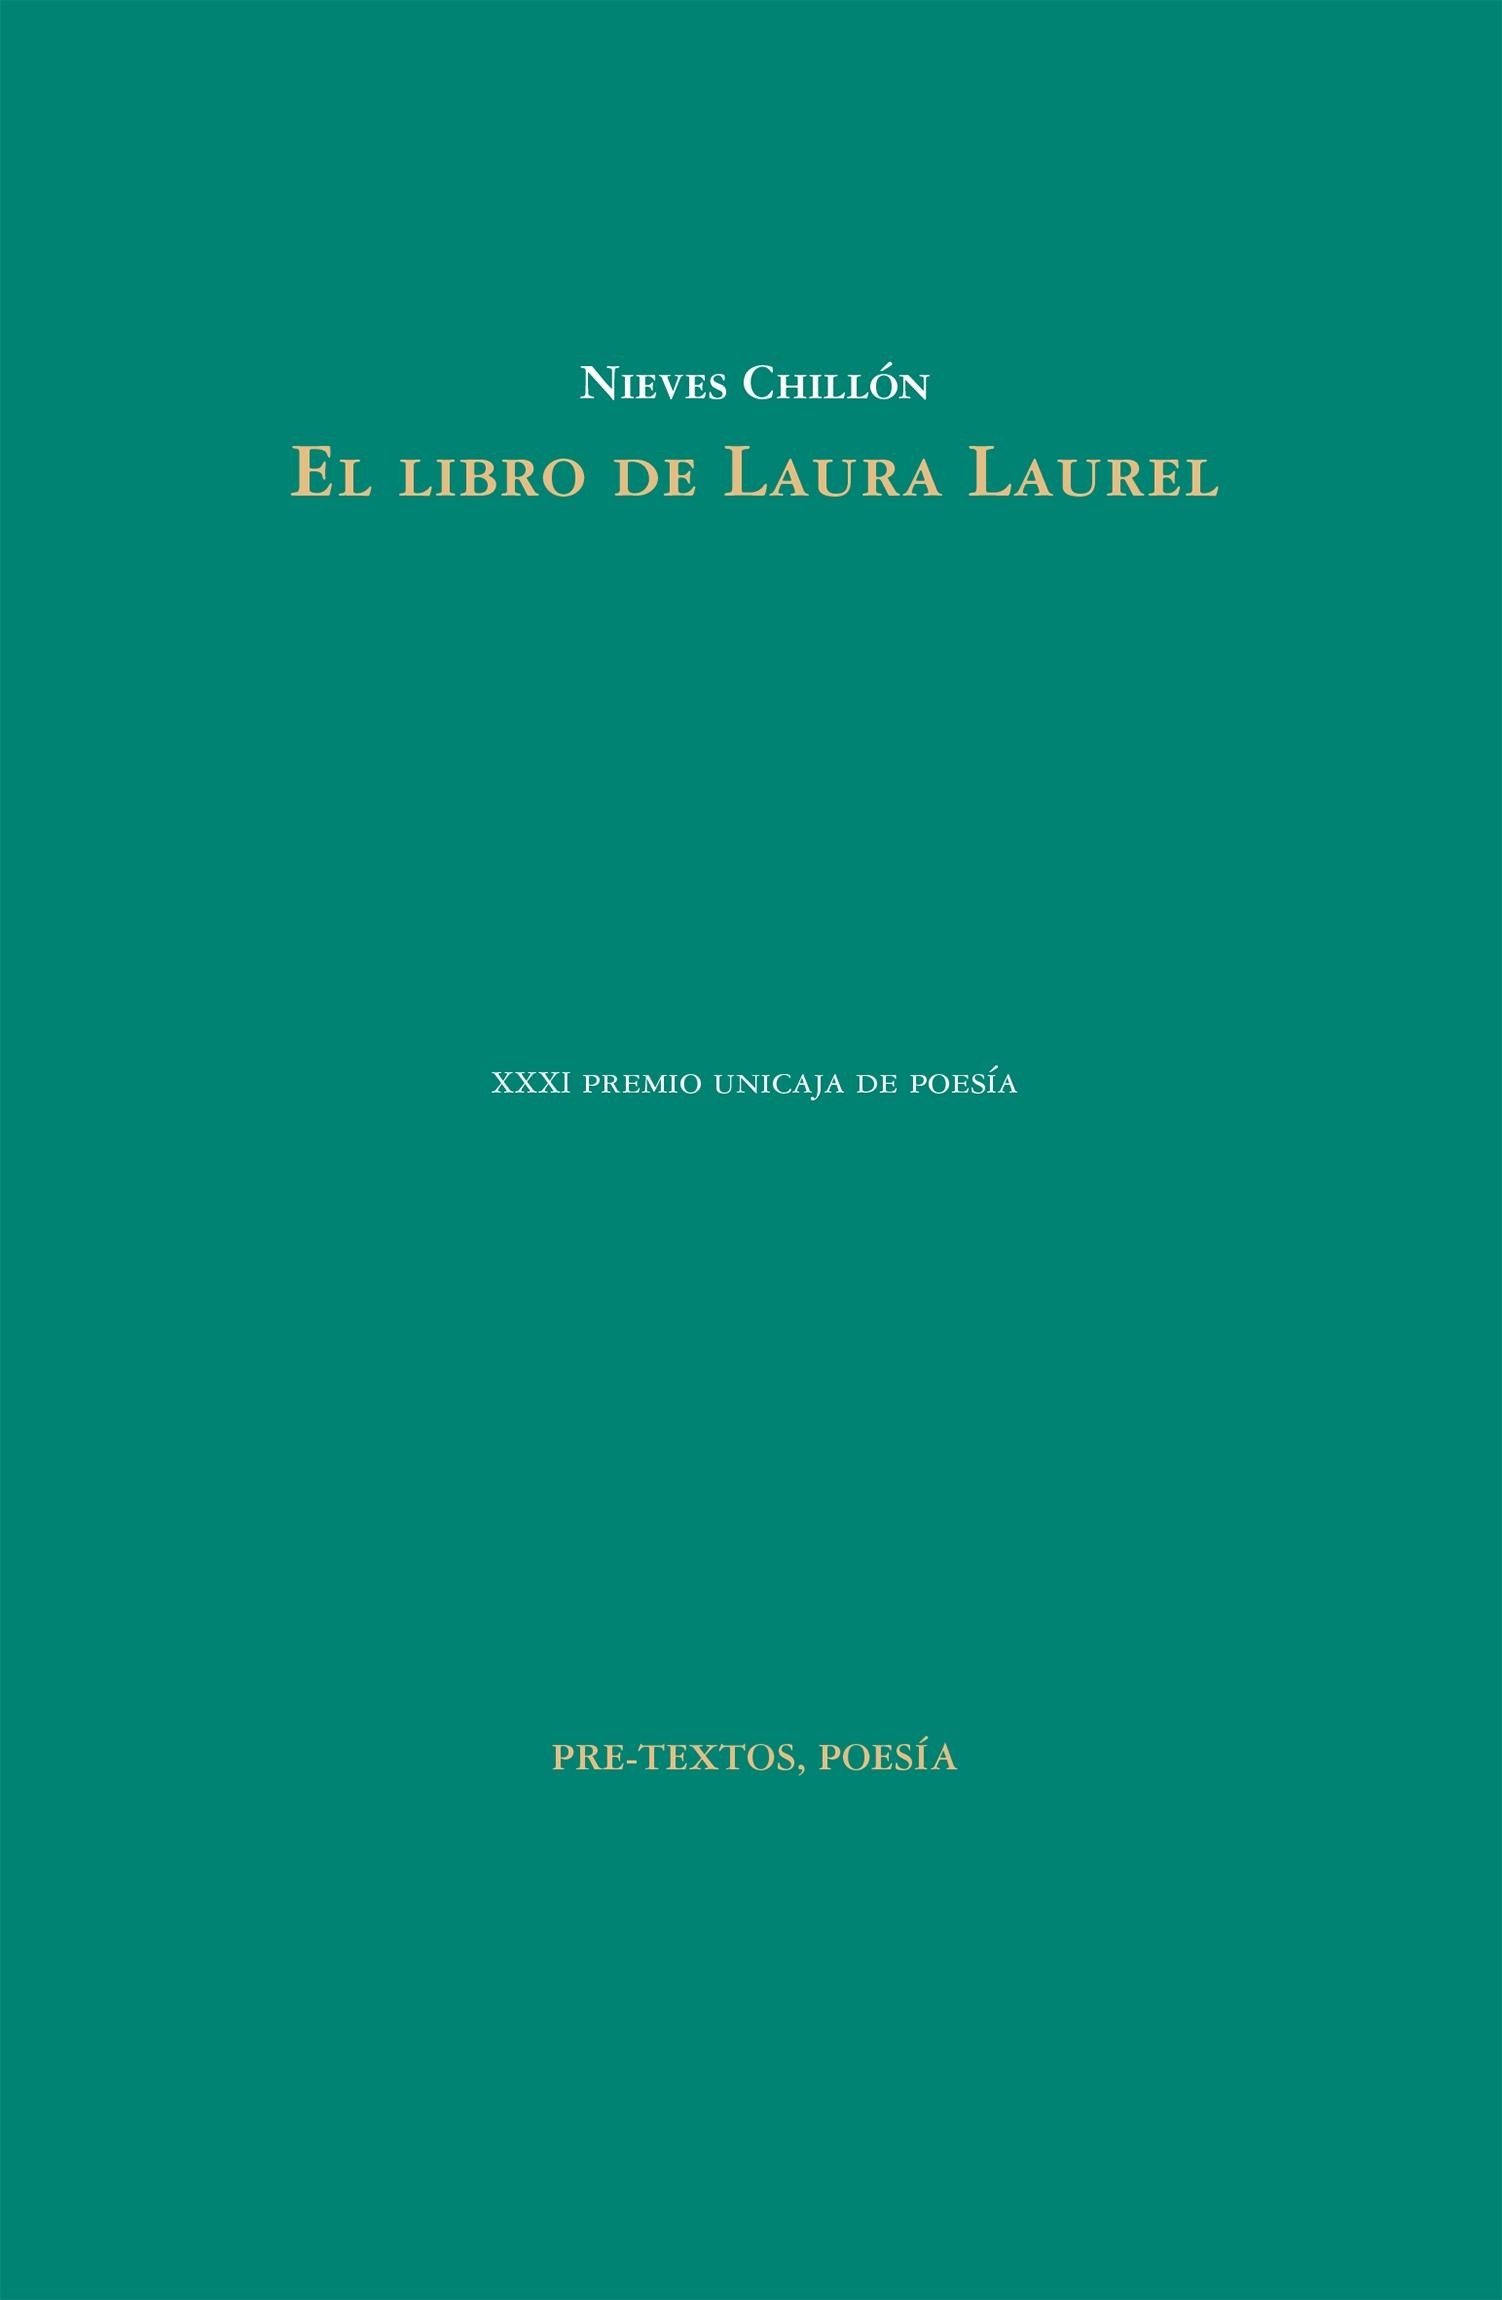 El Libro de Laura Laurel